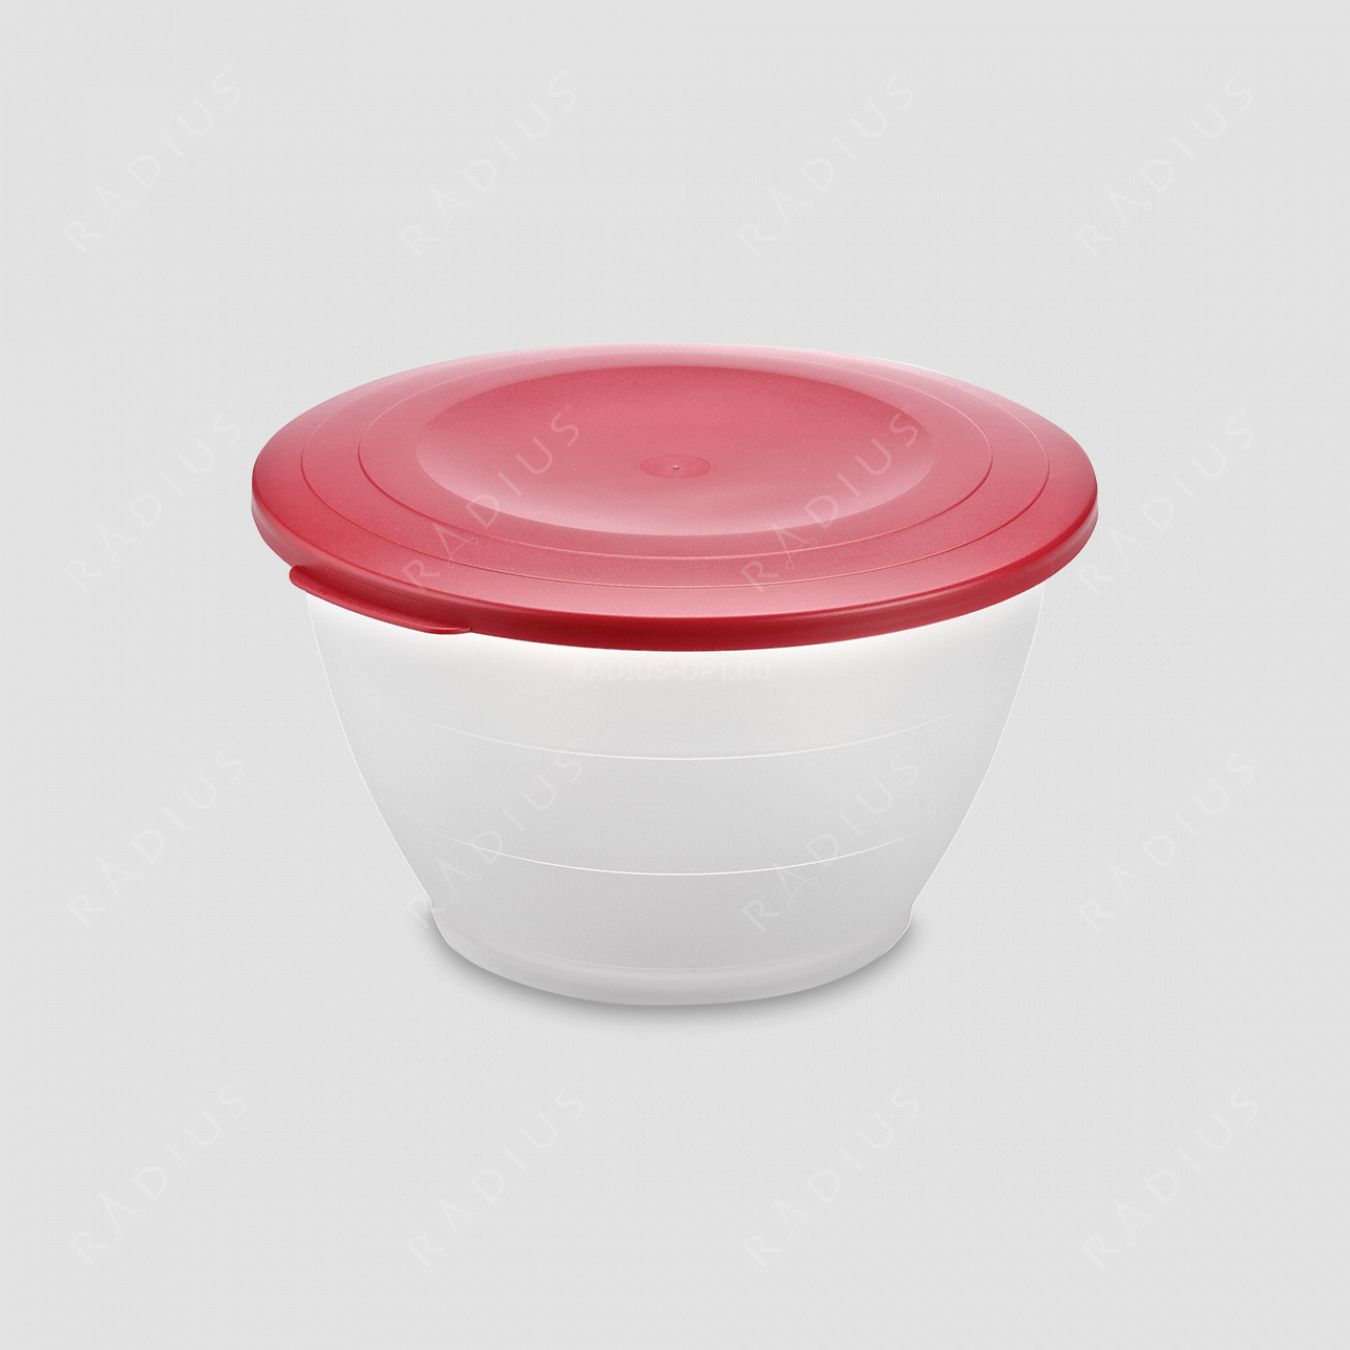 Емкость для салата с крышкой, объем 2,5 л, диаметр 21 см, цвет - красный, серия Plastic tools, Westmark, Германия